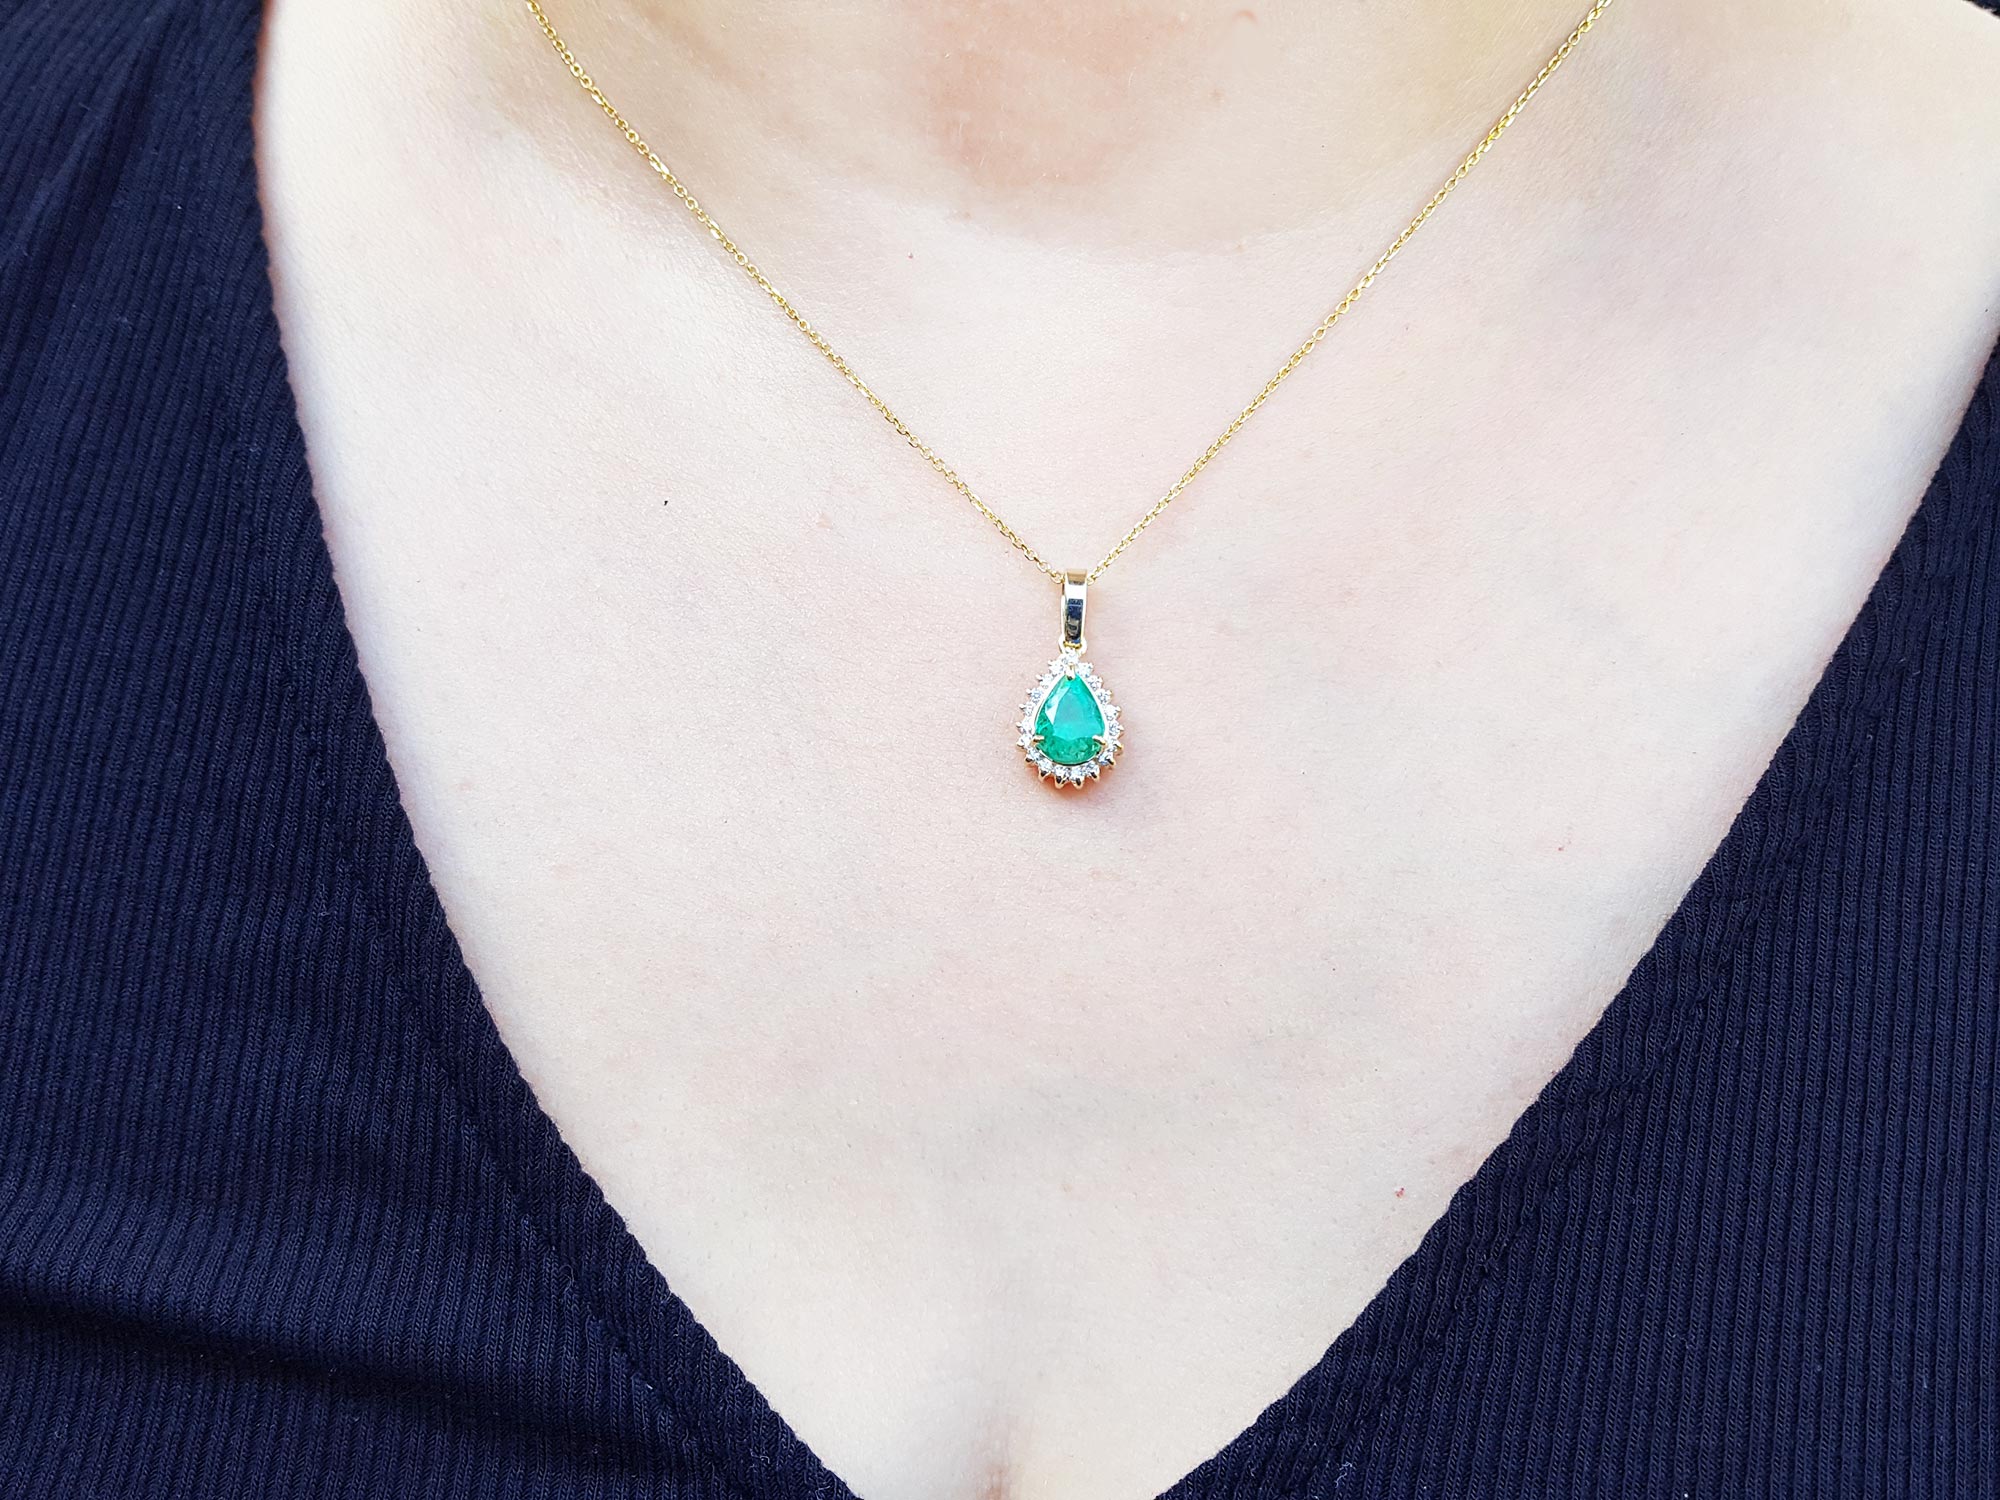 Halo pear shape emerald pendant